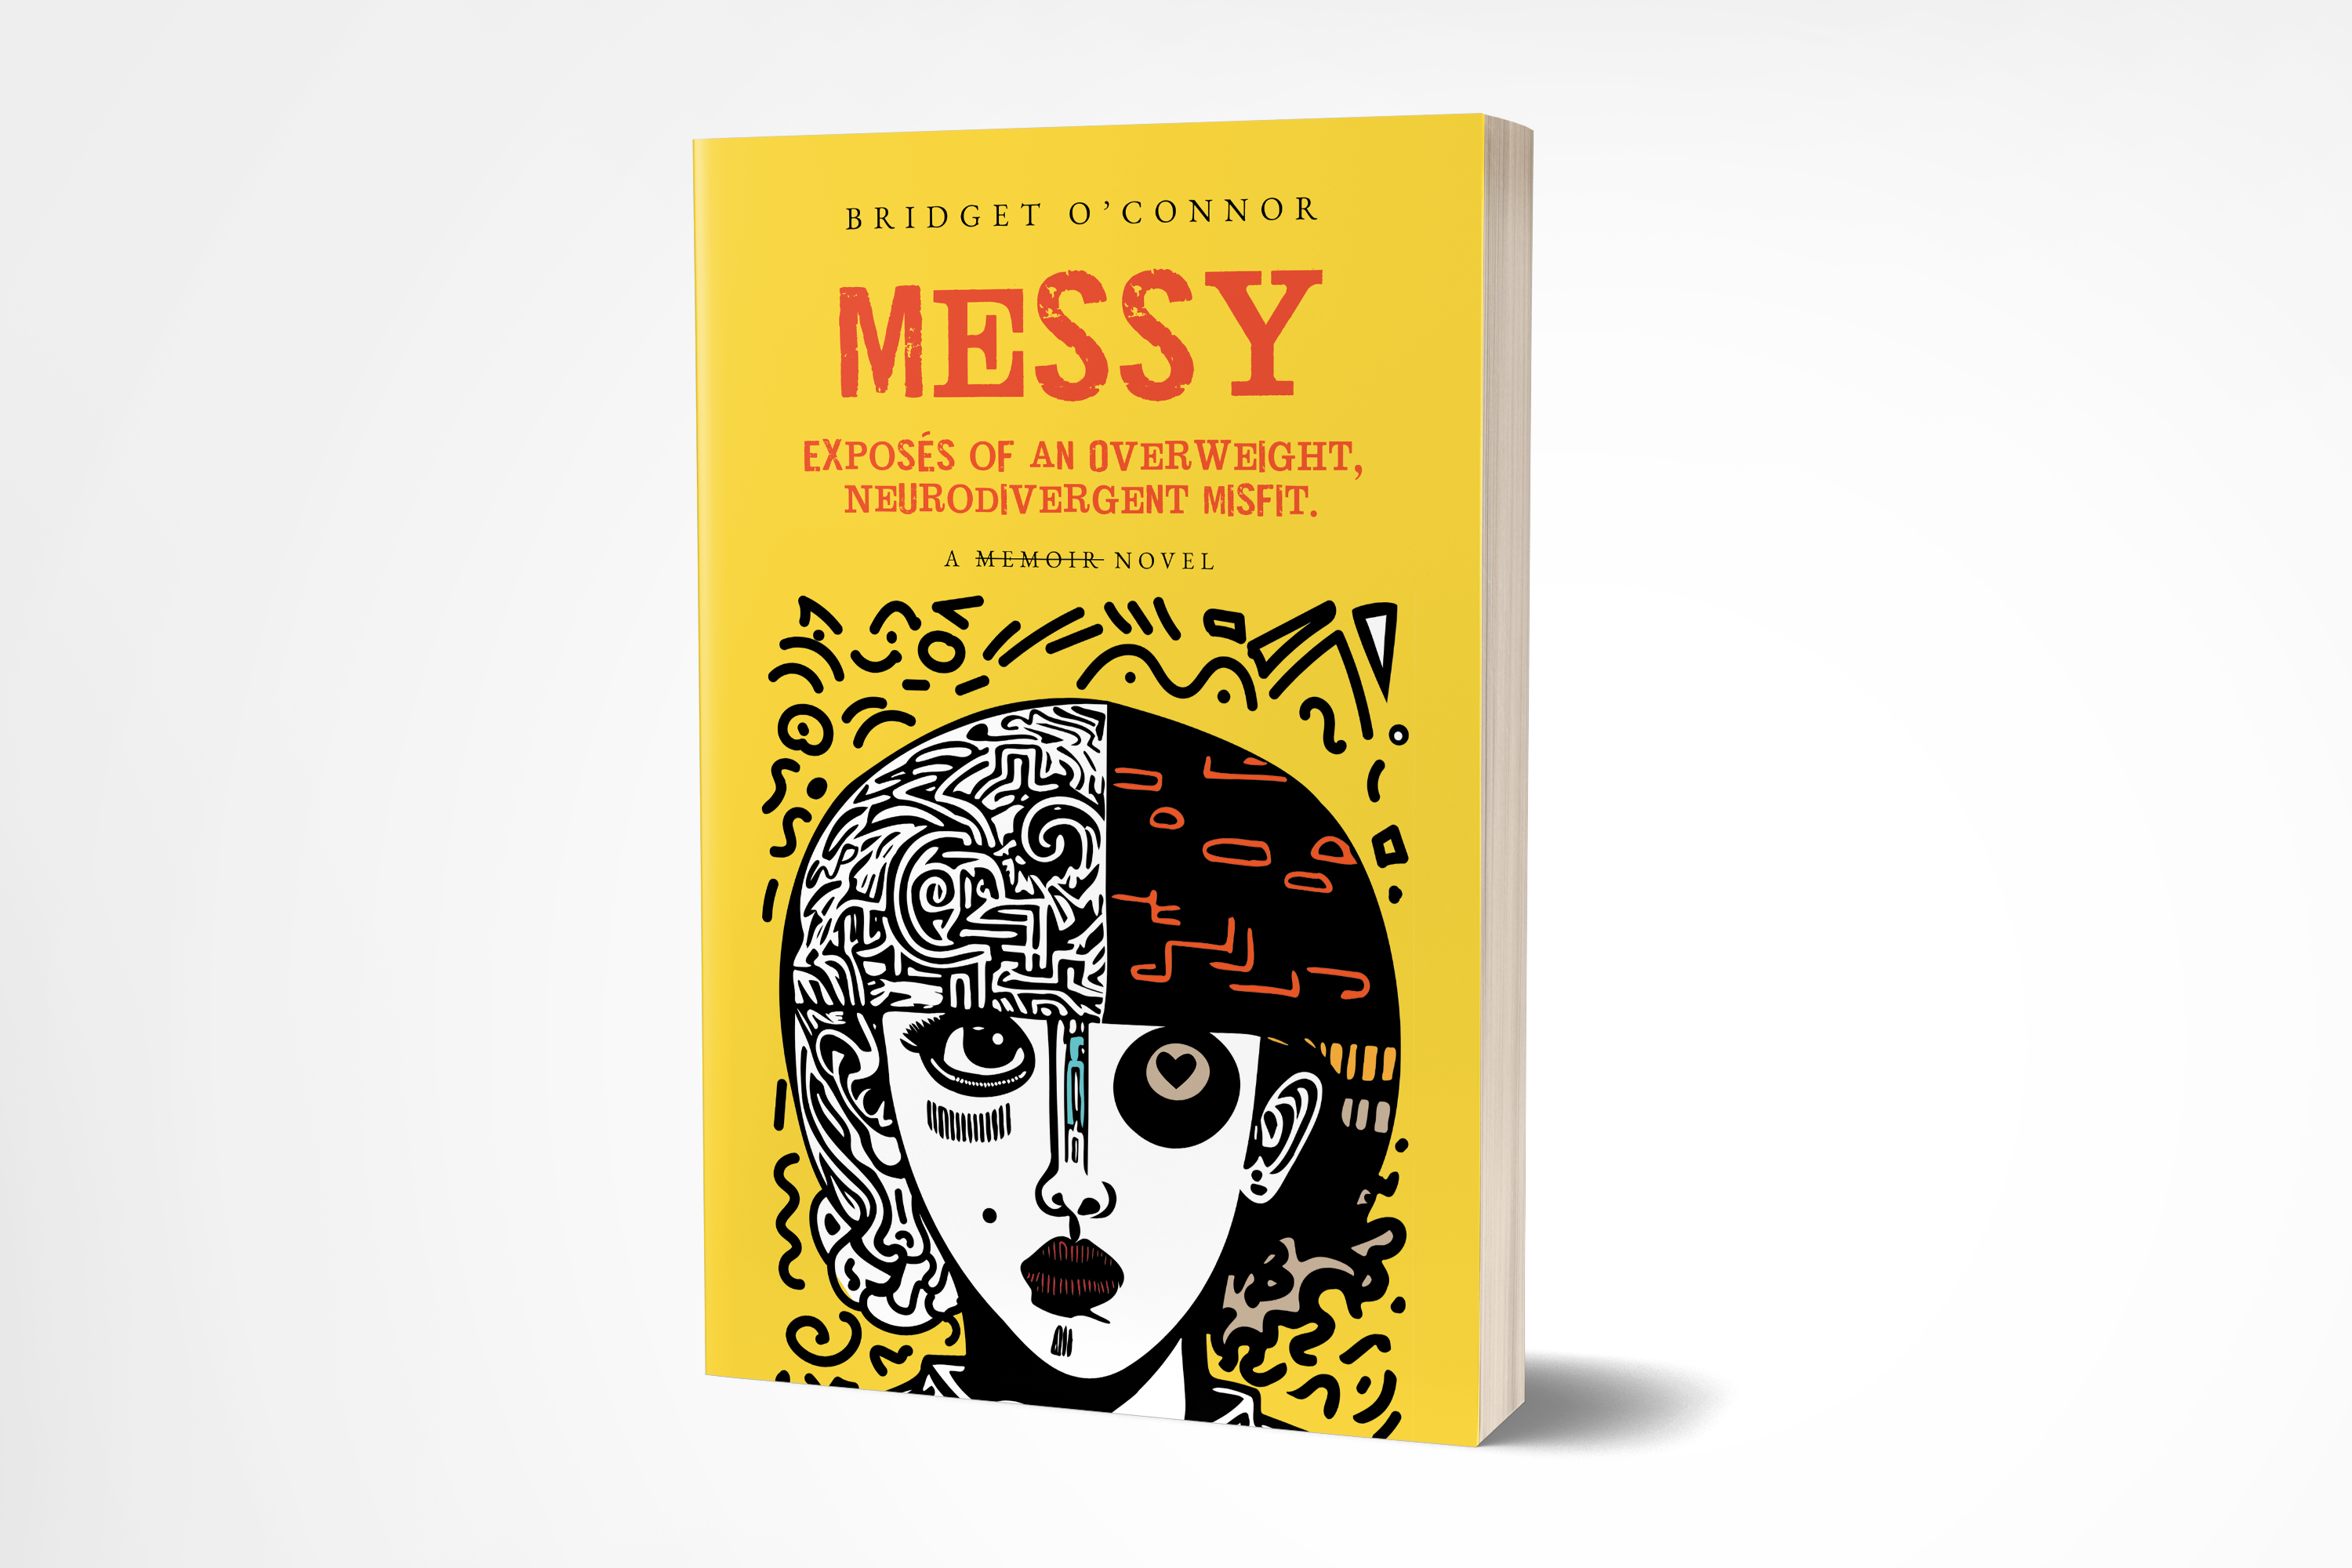 Messy, Exposés of an Overweight, Neurodivergent Misfit: A Memoir Novel